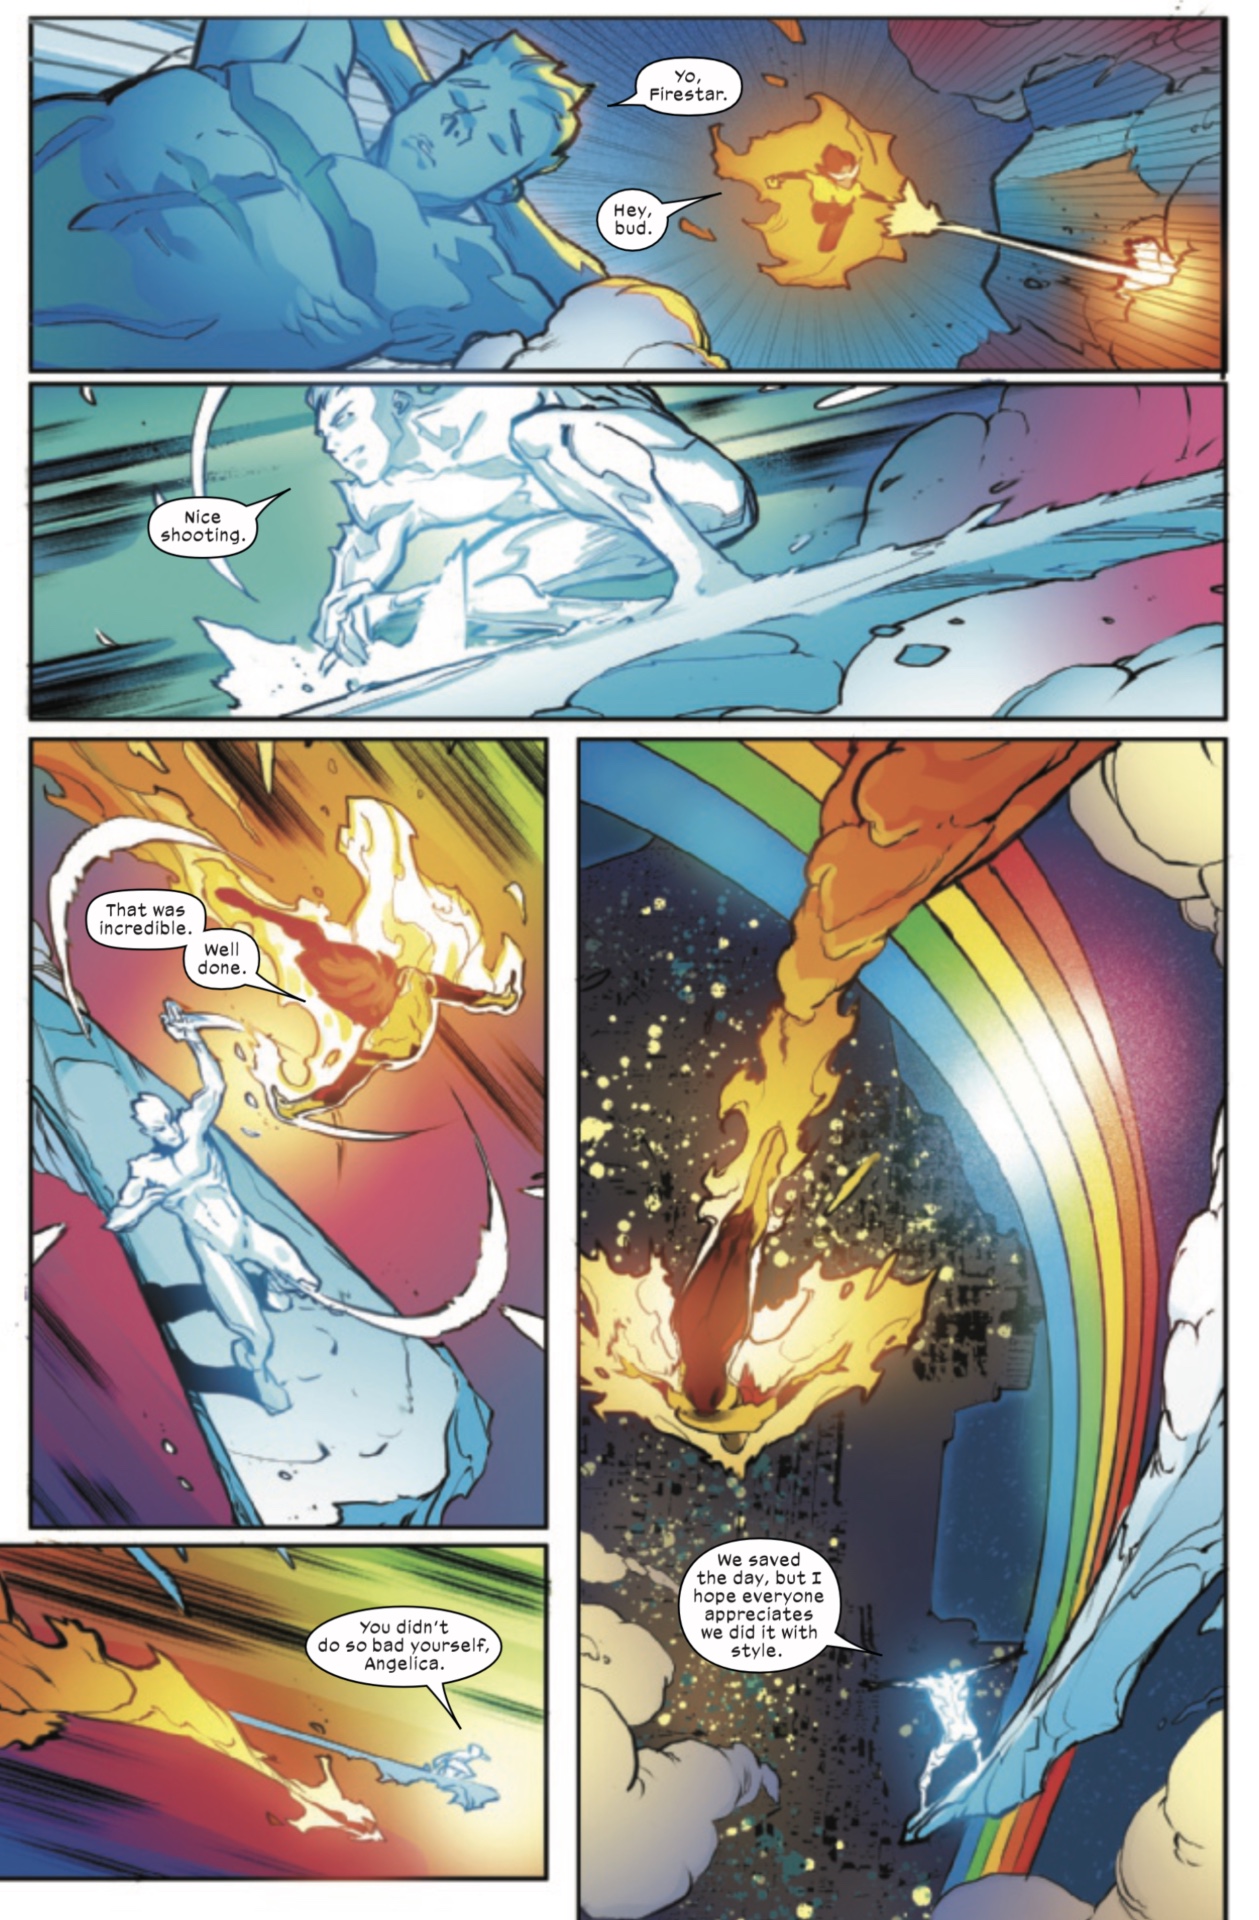 Pagina X-Men #14